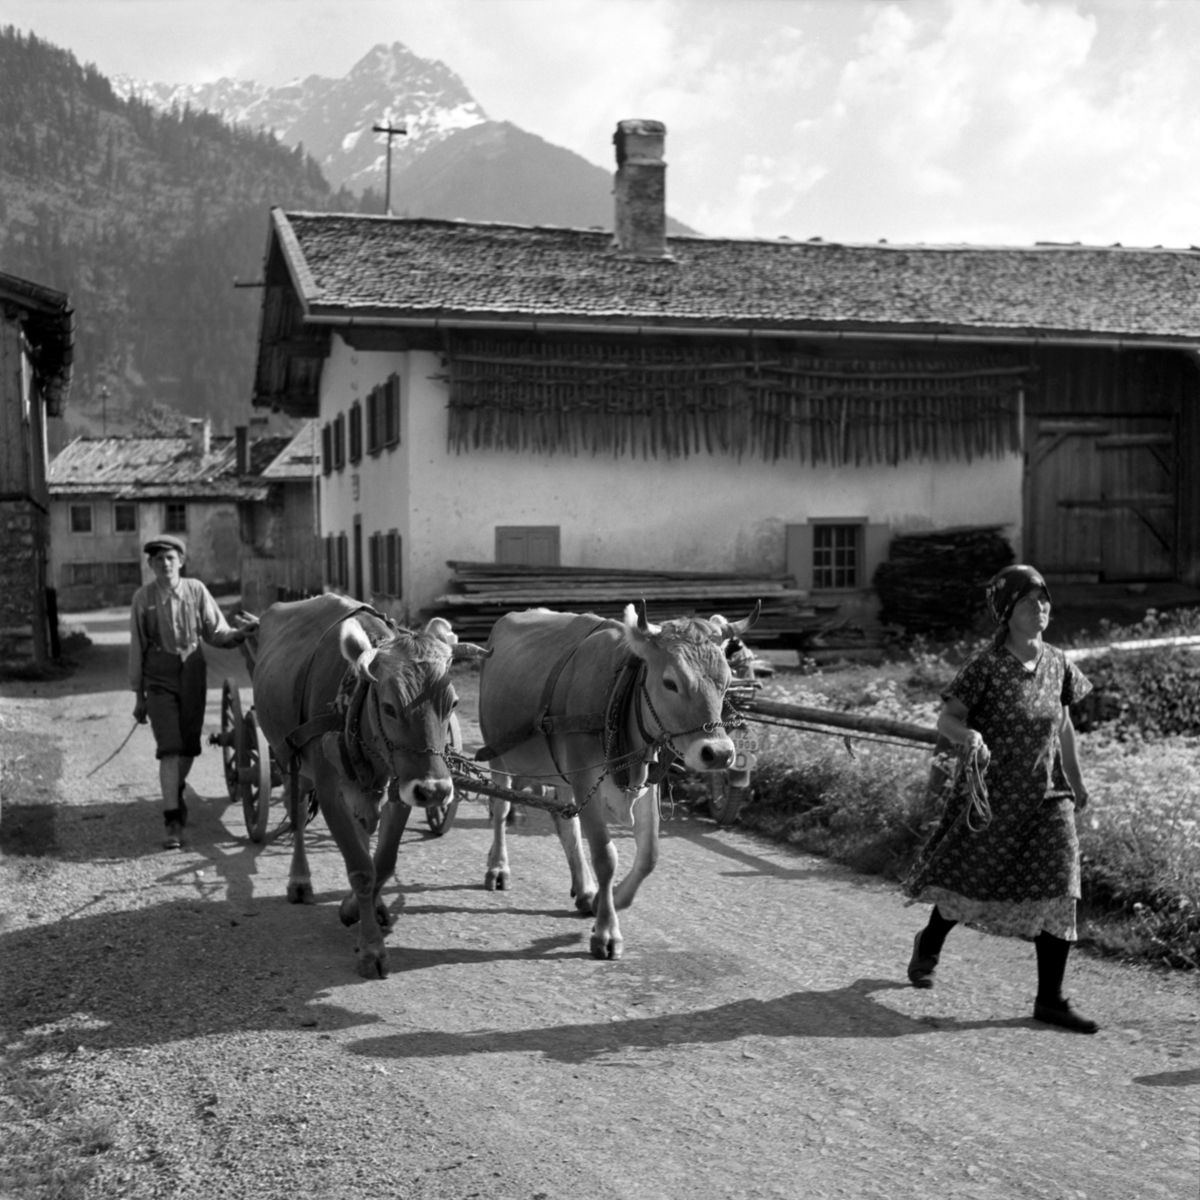 Tourismusverband Allgäu – Kempten Das kulinarische Erbe der Alpen